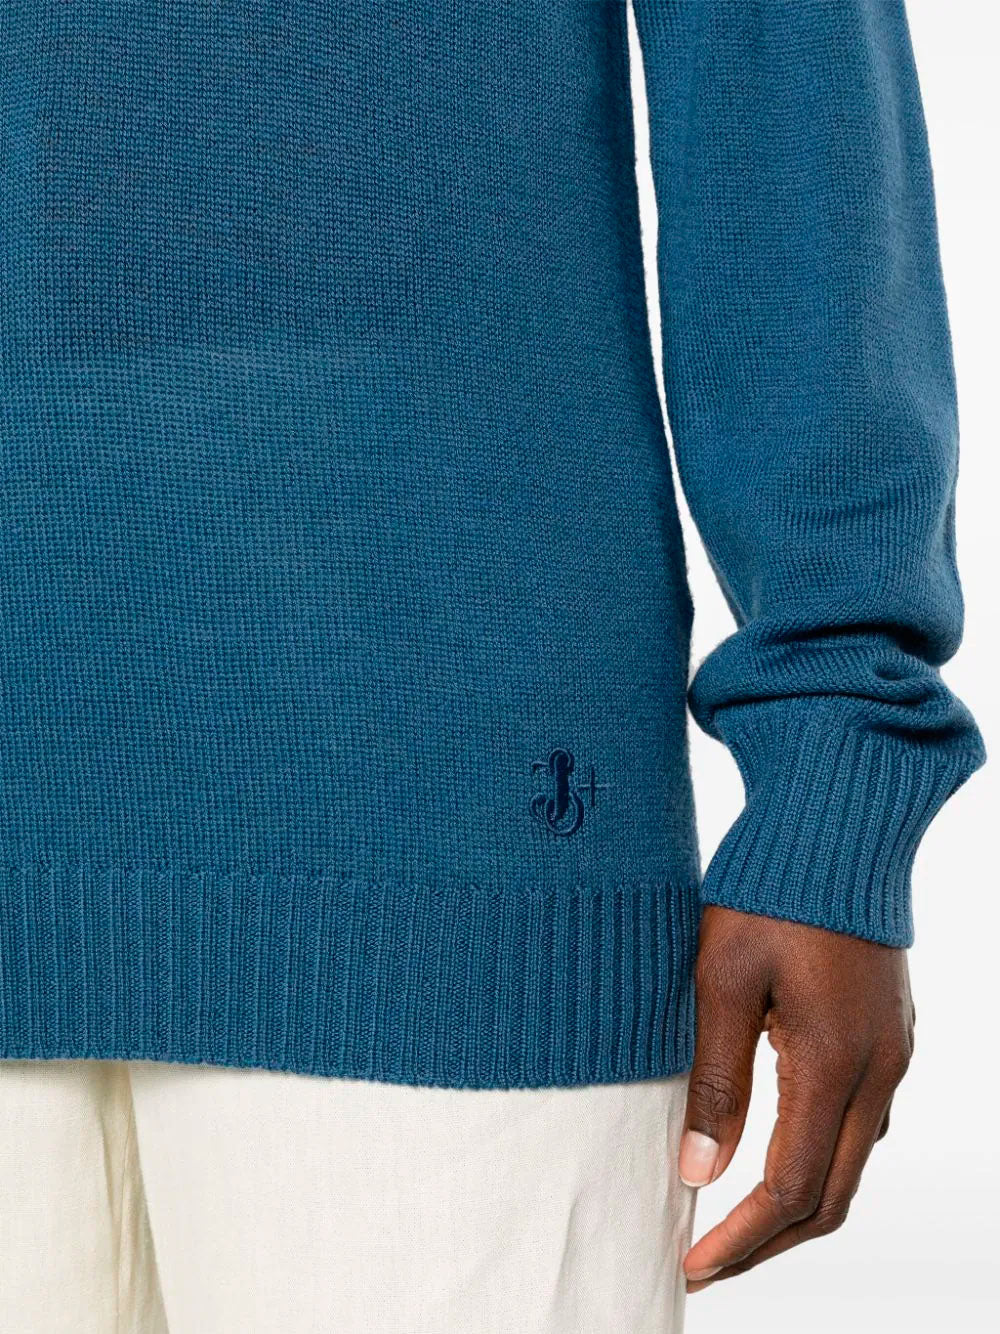 Wool jumper